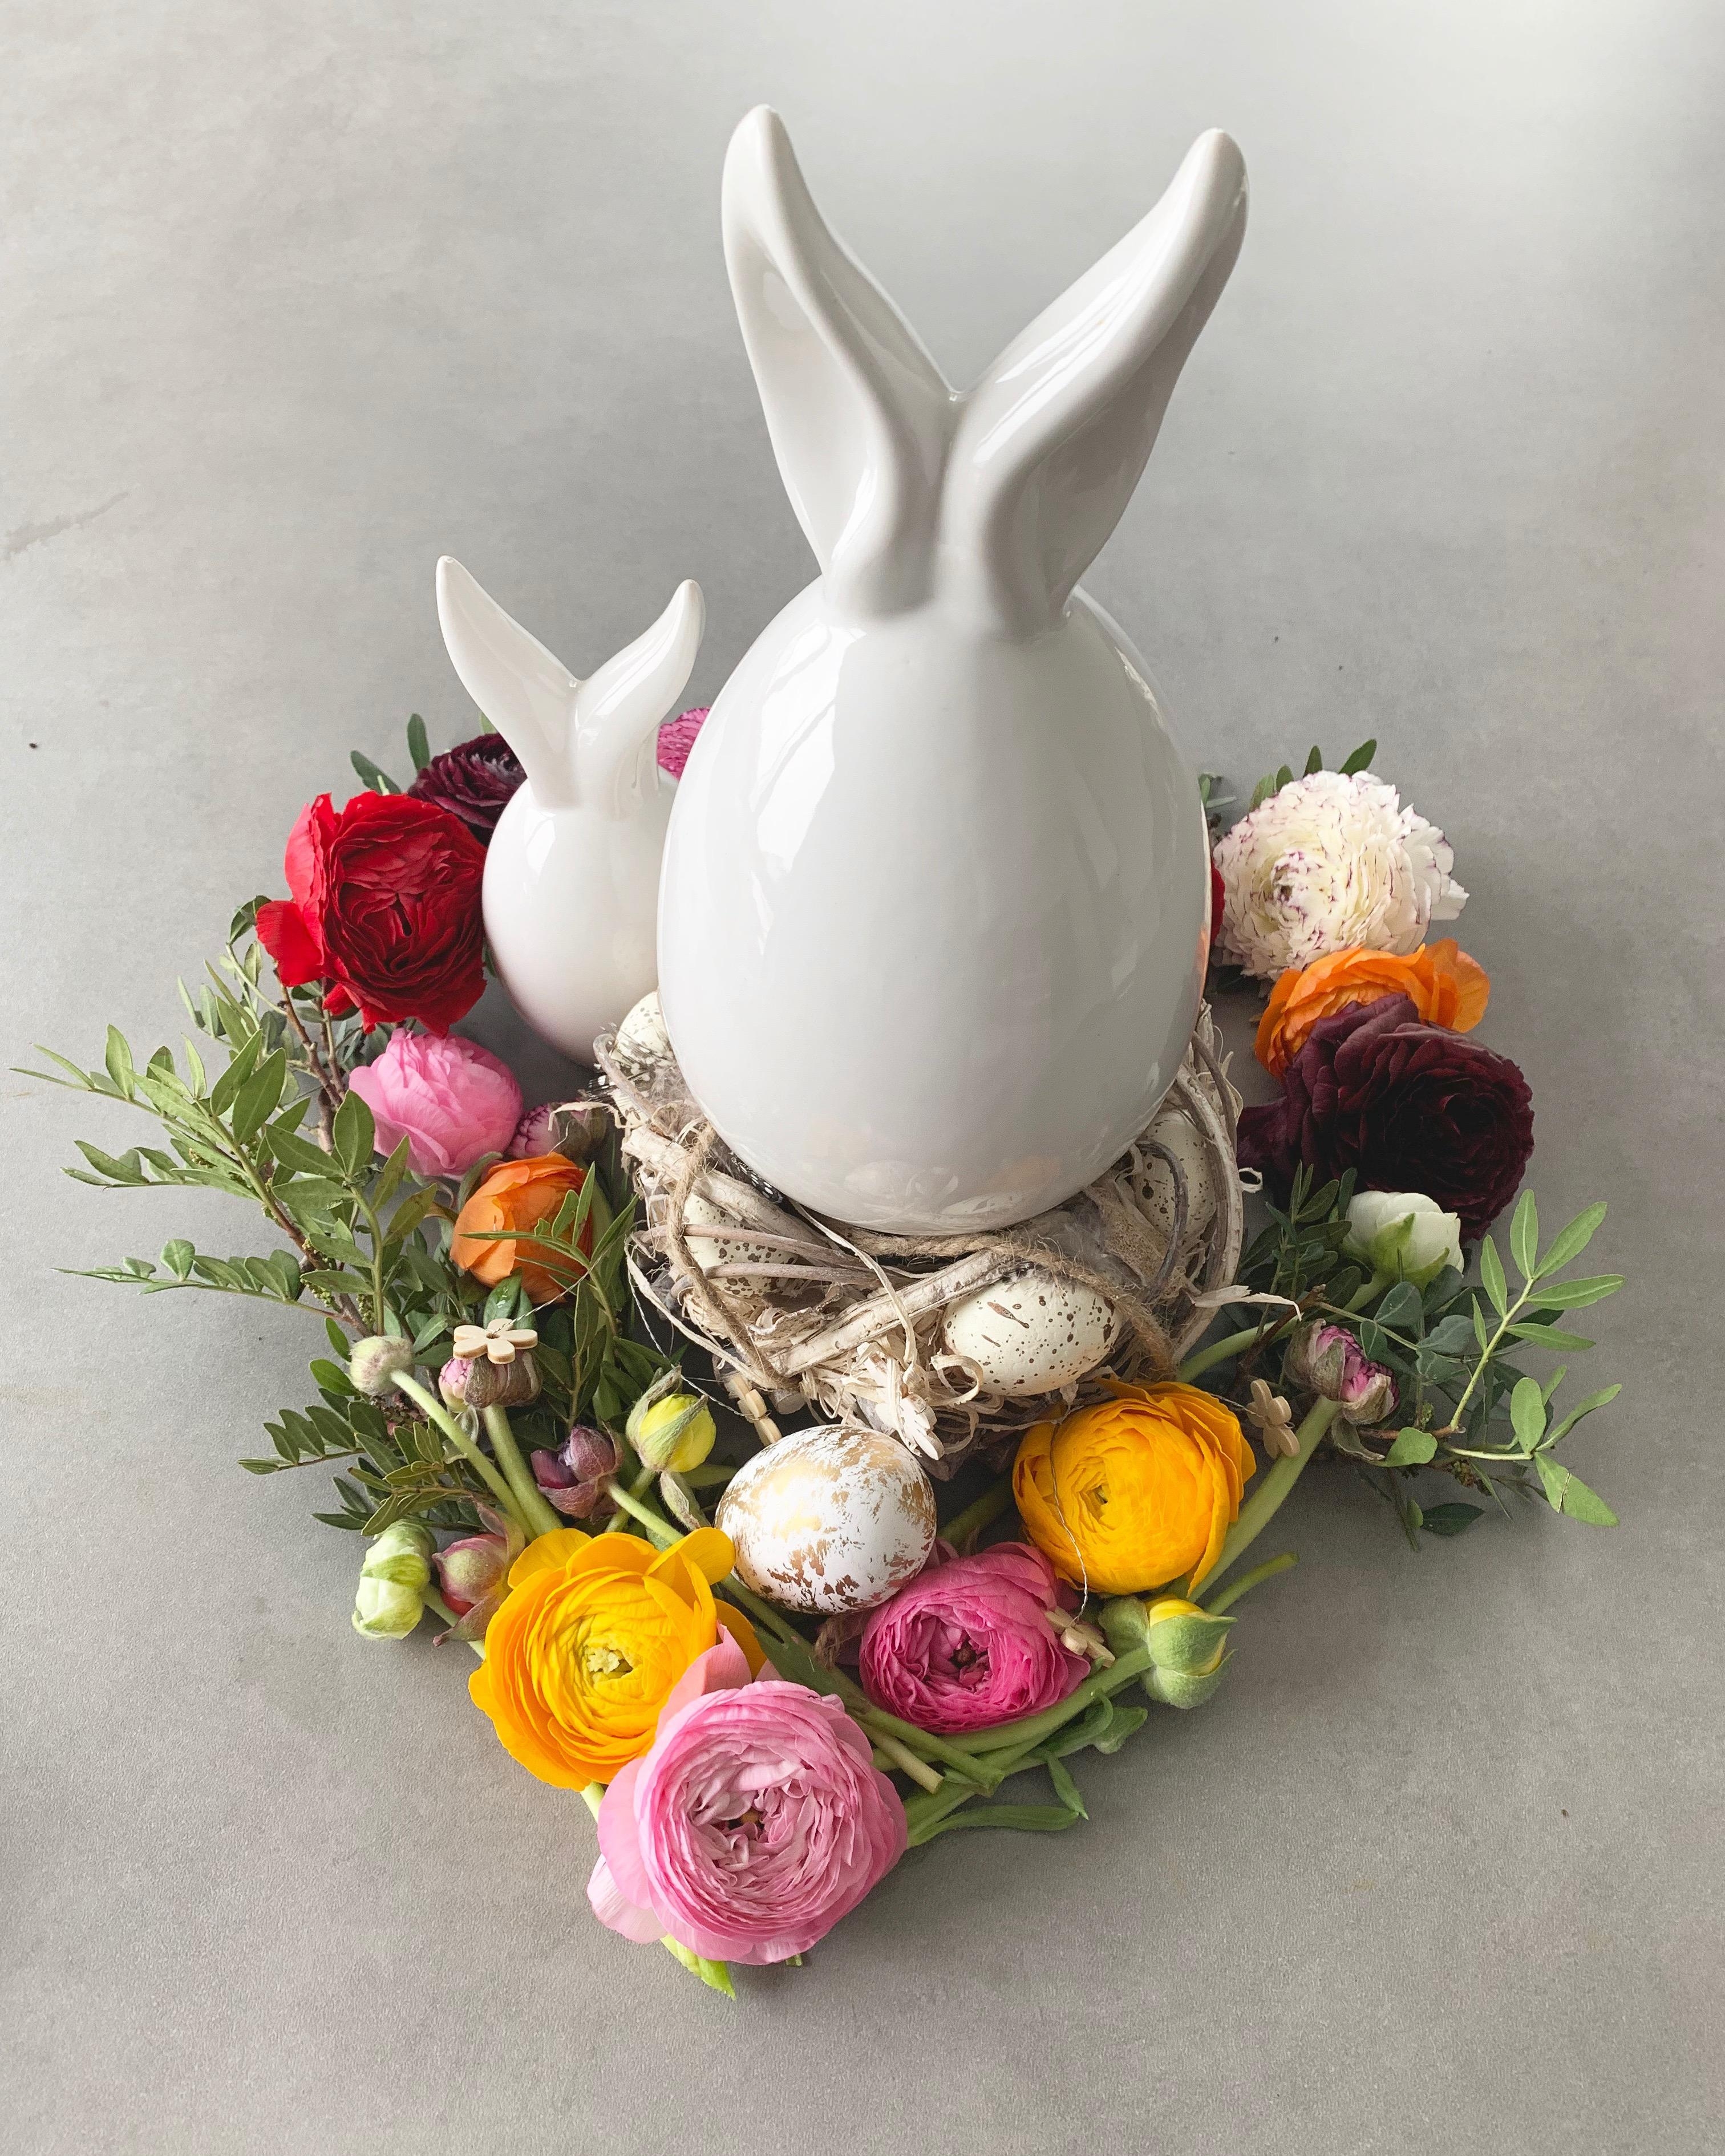 Frohe Ostern wünsche ich euch.
#ostern #blumendeko #deko #ostergesteck